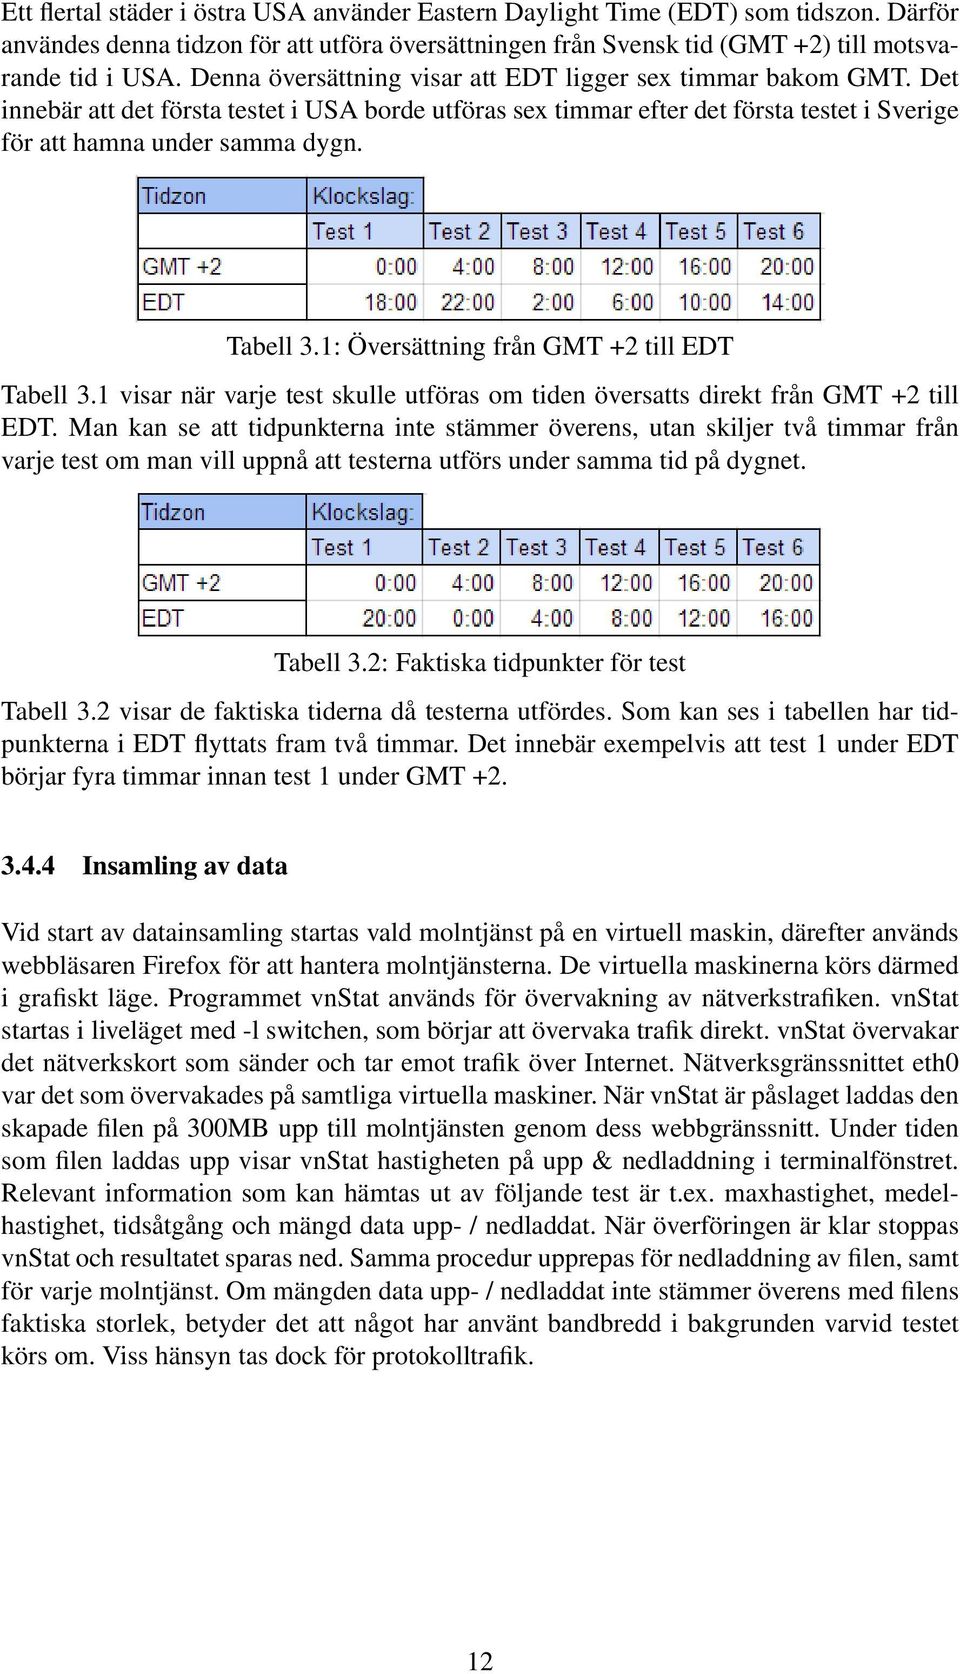 Tabell 3.1: Översättning från GMT +2 till EDT Tabell 3.1 visar när varje test skulle utföras om tiden översatts direkt från GMT +2 till EDT.